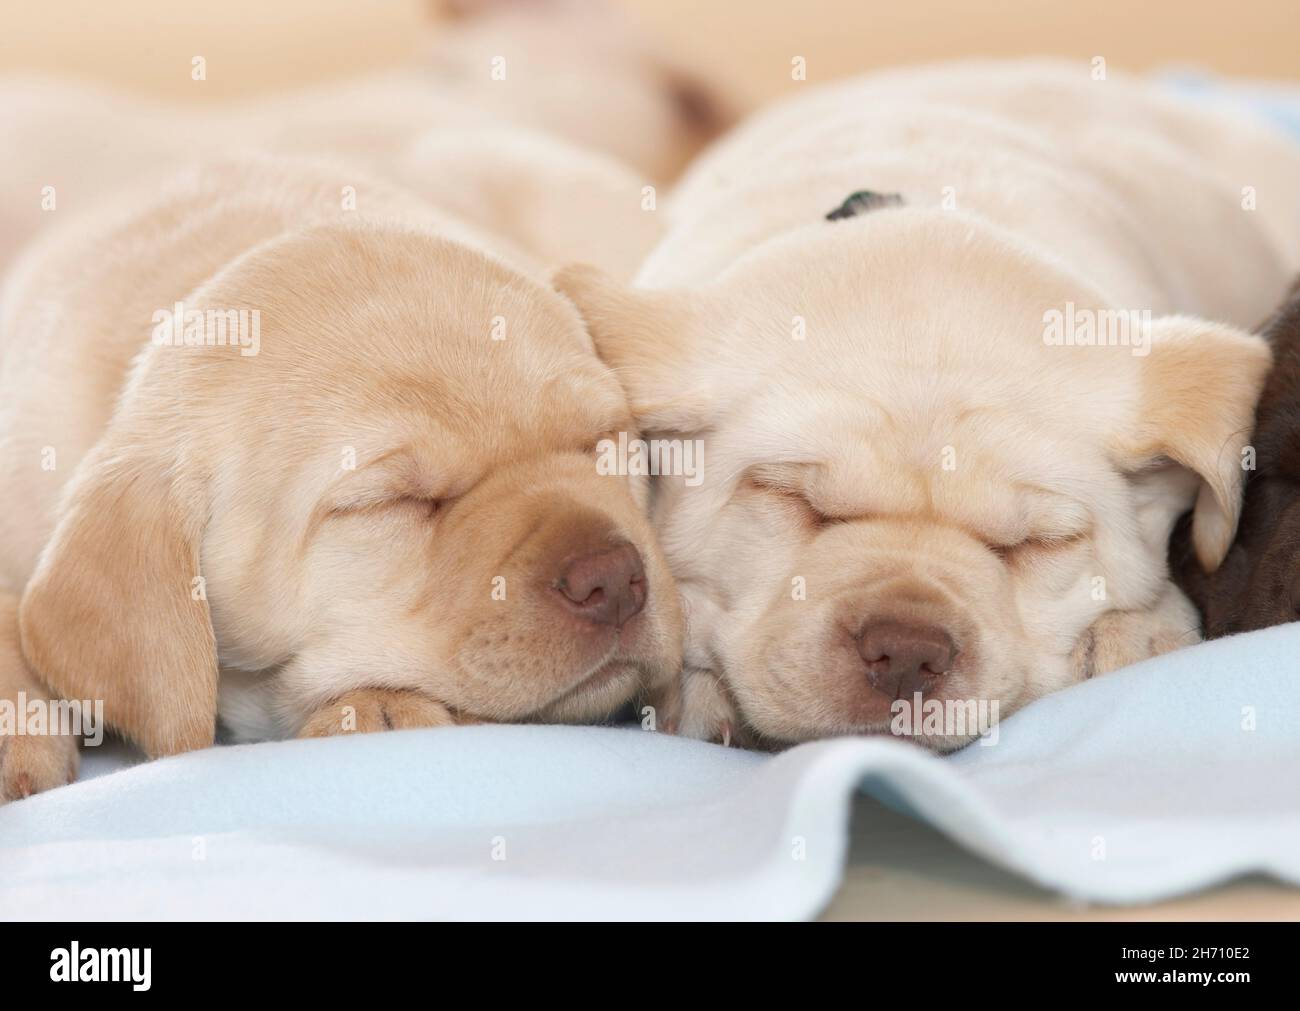 Perrito Labrador. Dos cachorros durmiendo sobre una manta. Alemania Foto de stock